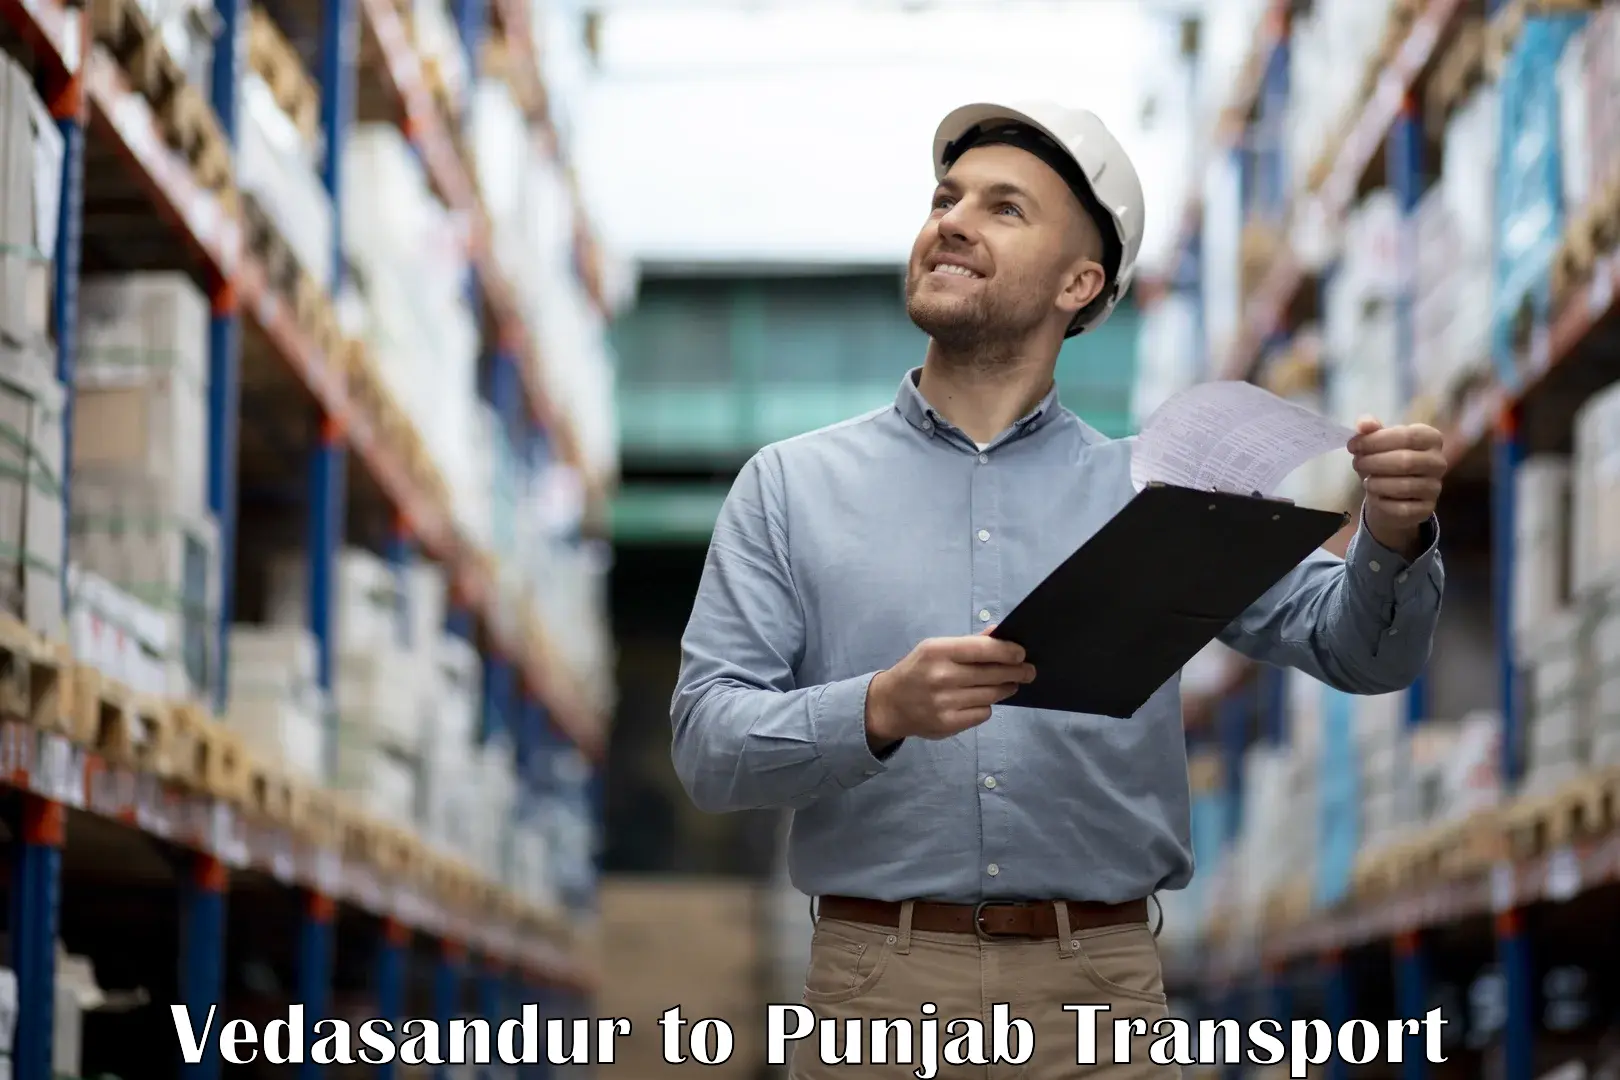 Cargo transportation services Vedasandur to IIT Ropar